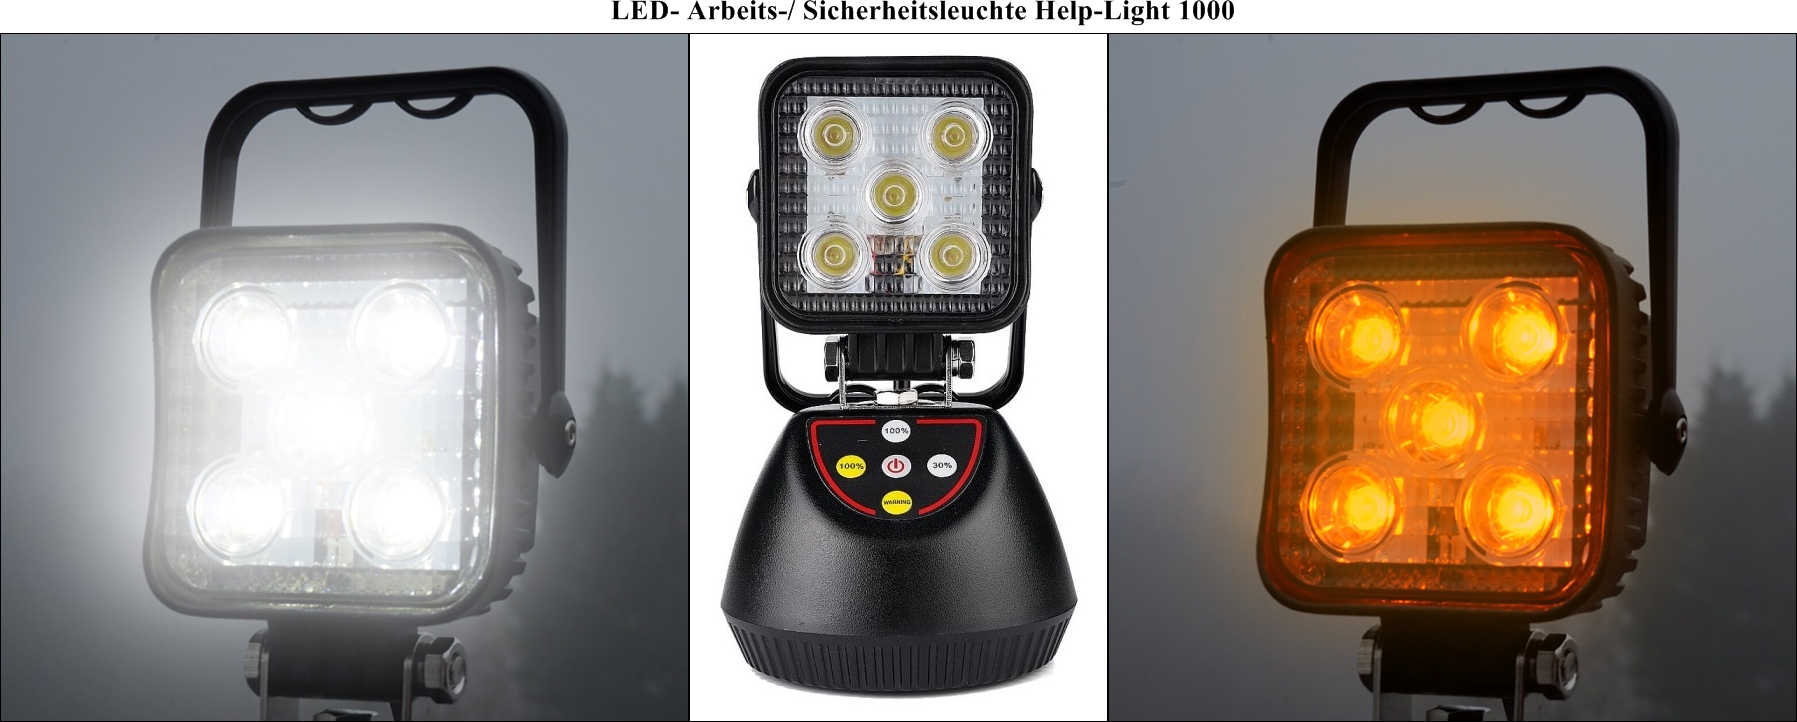 LED- Arbeits- Sicherheitsleuchte Help-Light 1000